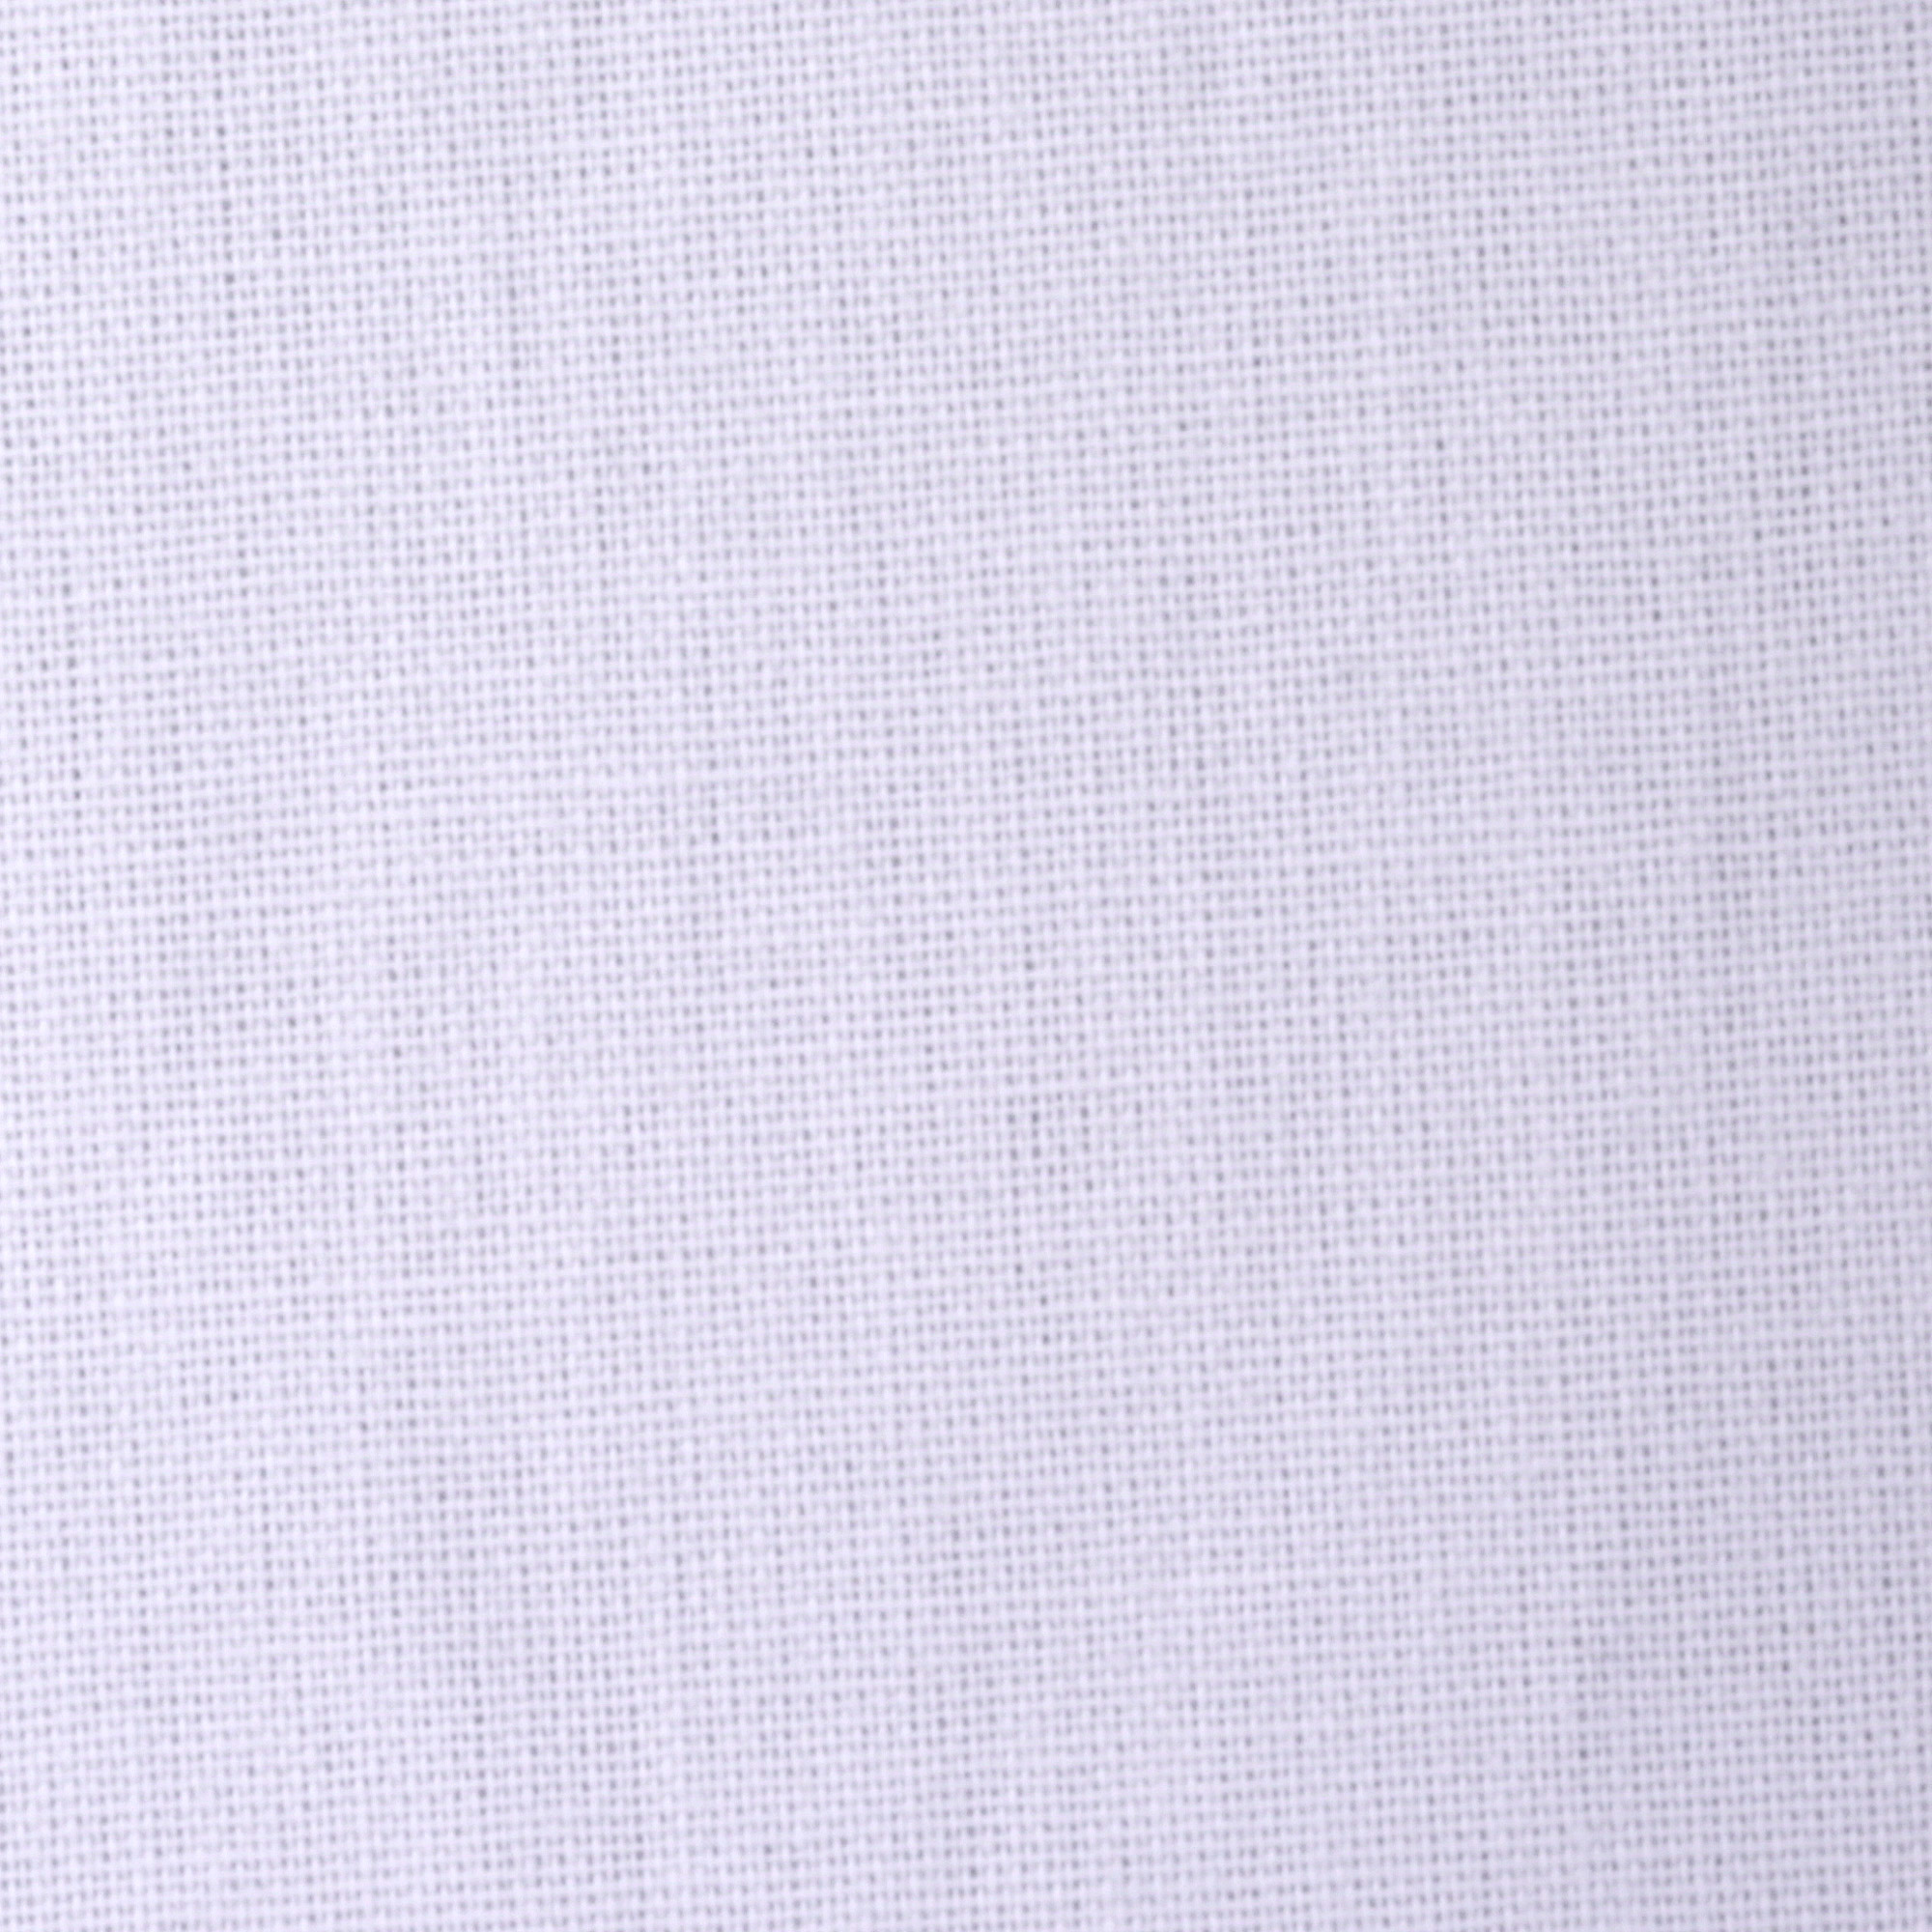 Комплект постельного белья La Besse Ранфорс сиреневый Кинг сайз, размер Кинг сайз - фото 4